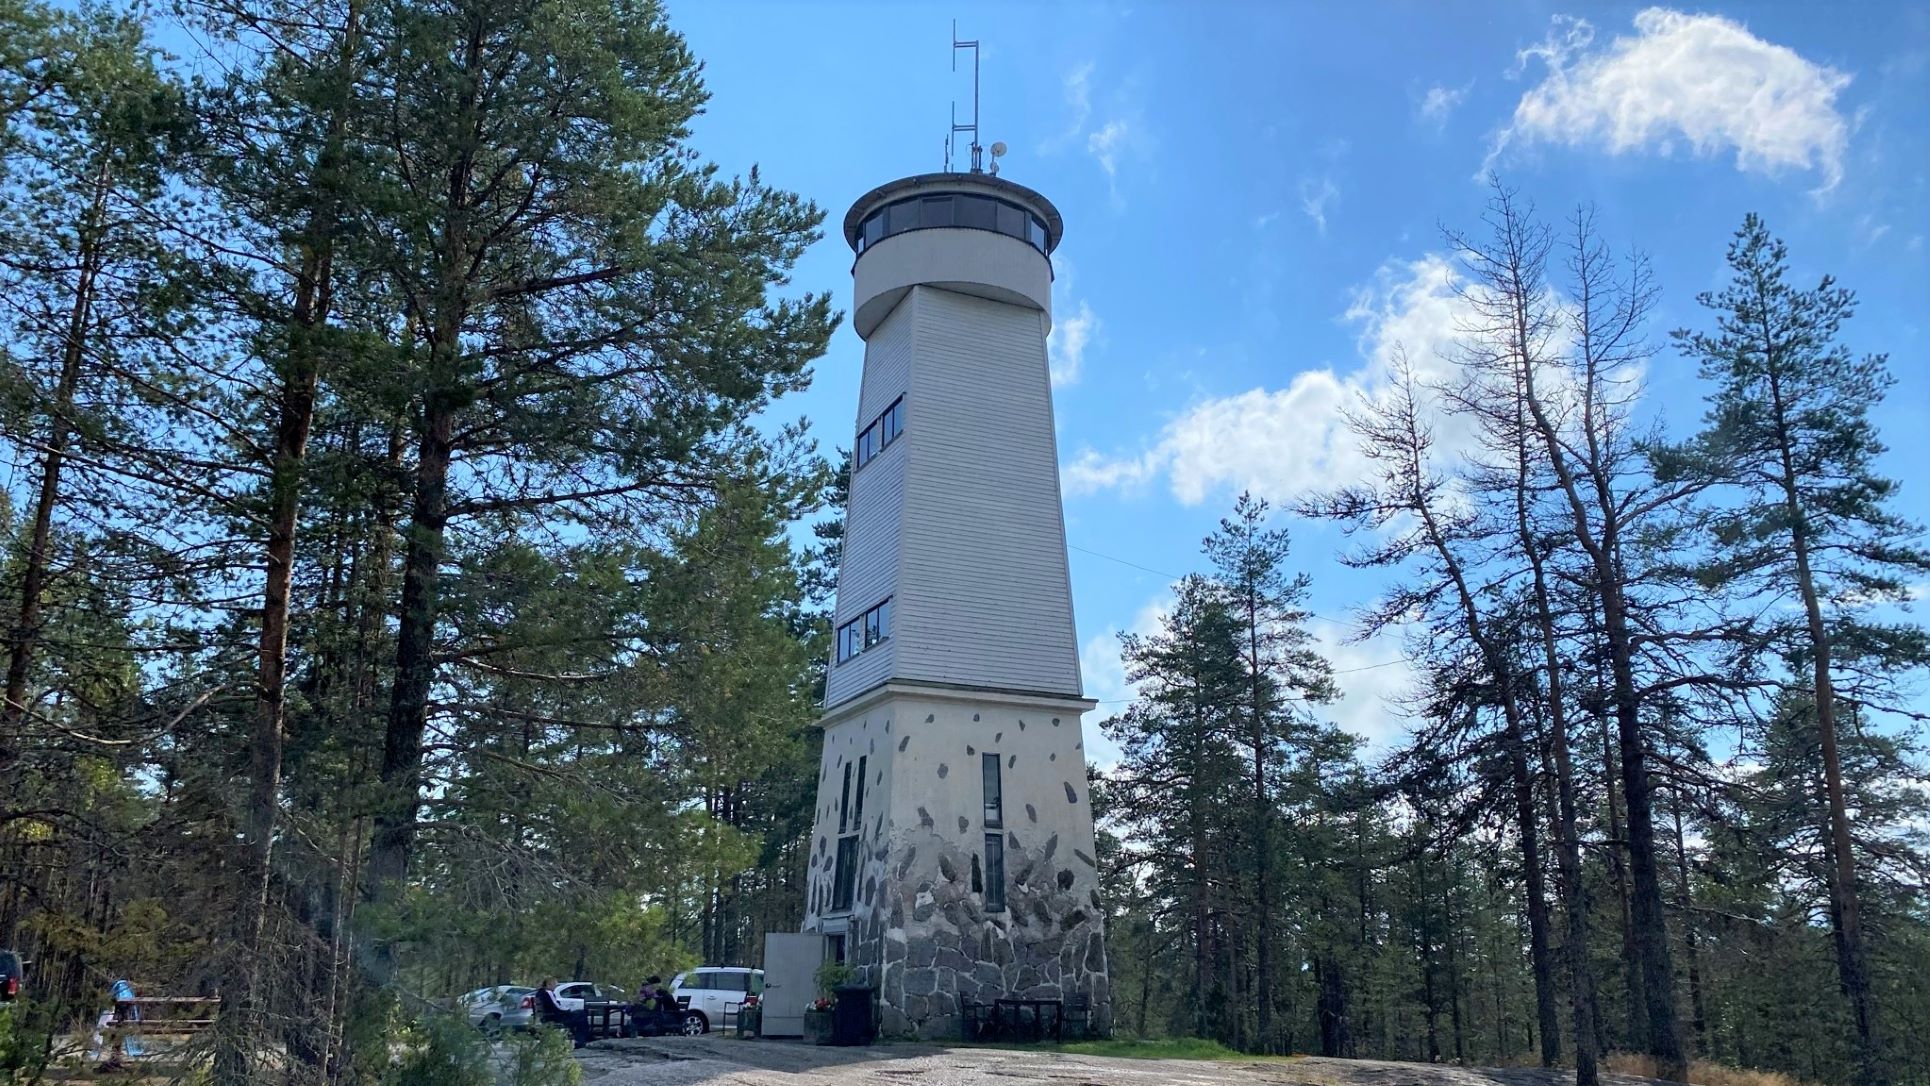 Savivuori observation tower at Viitasaari